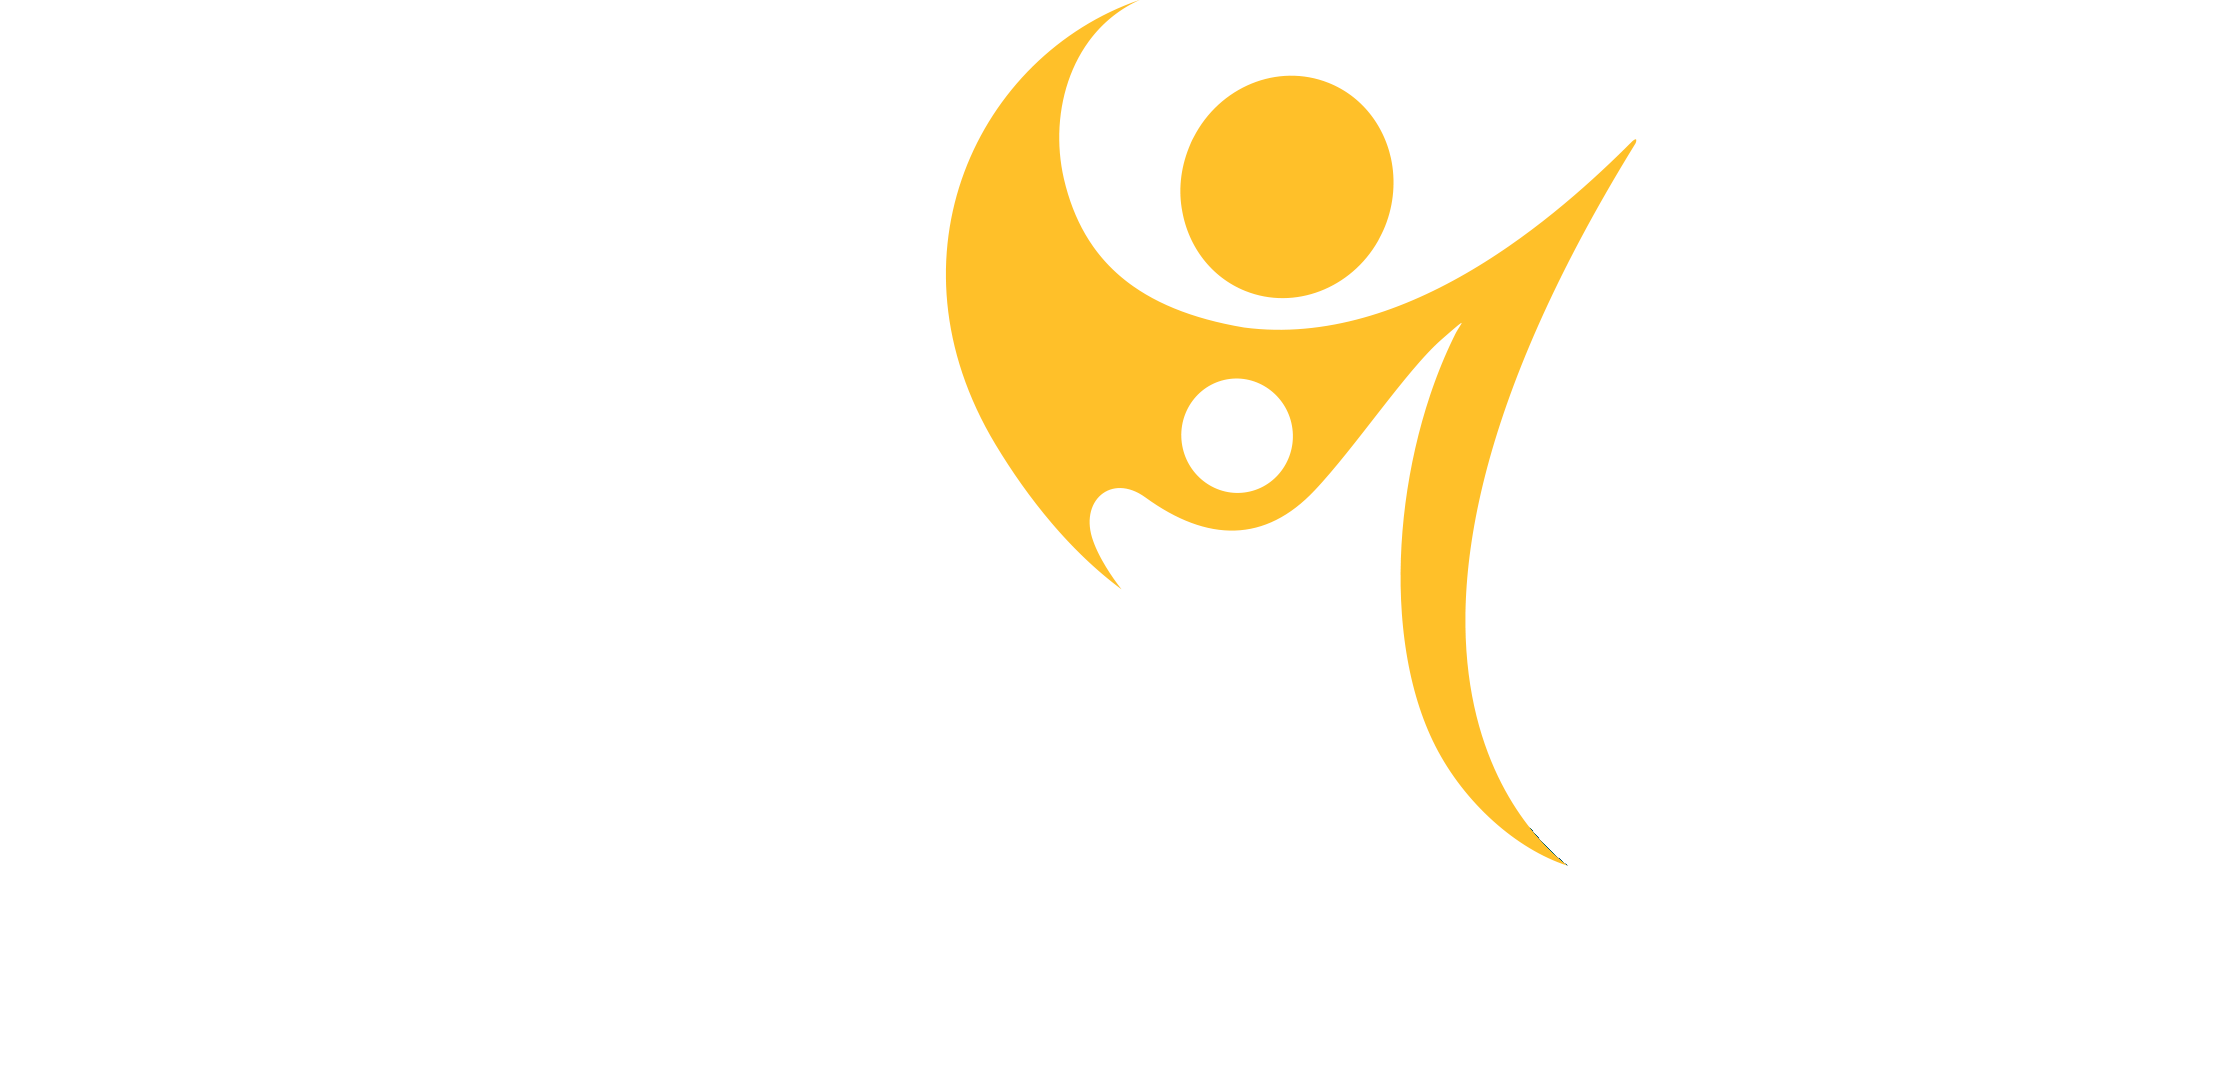 Teshuvah Biblical Studies Center